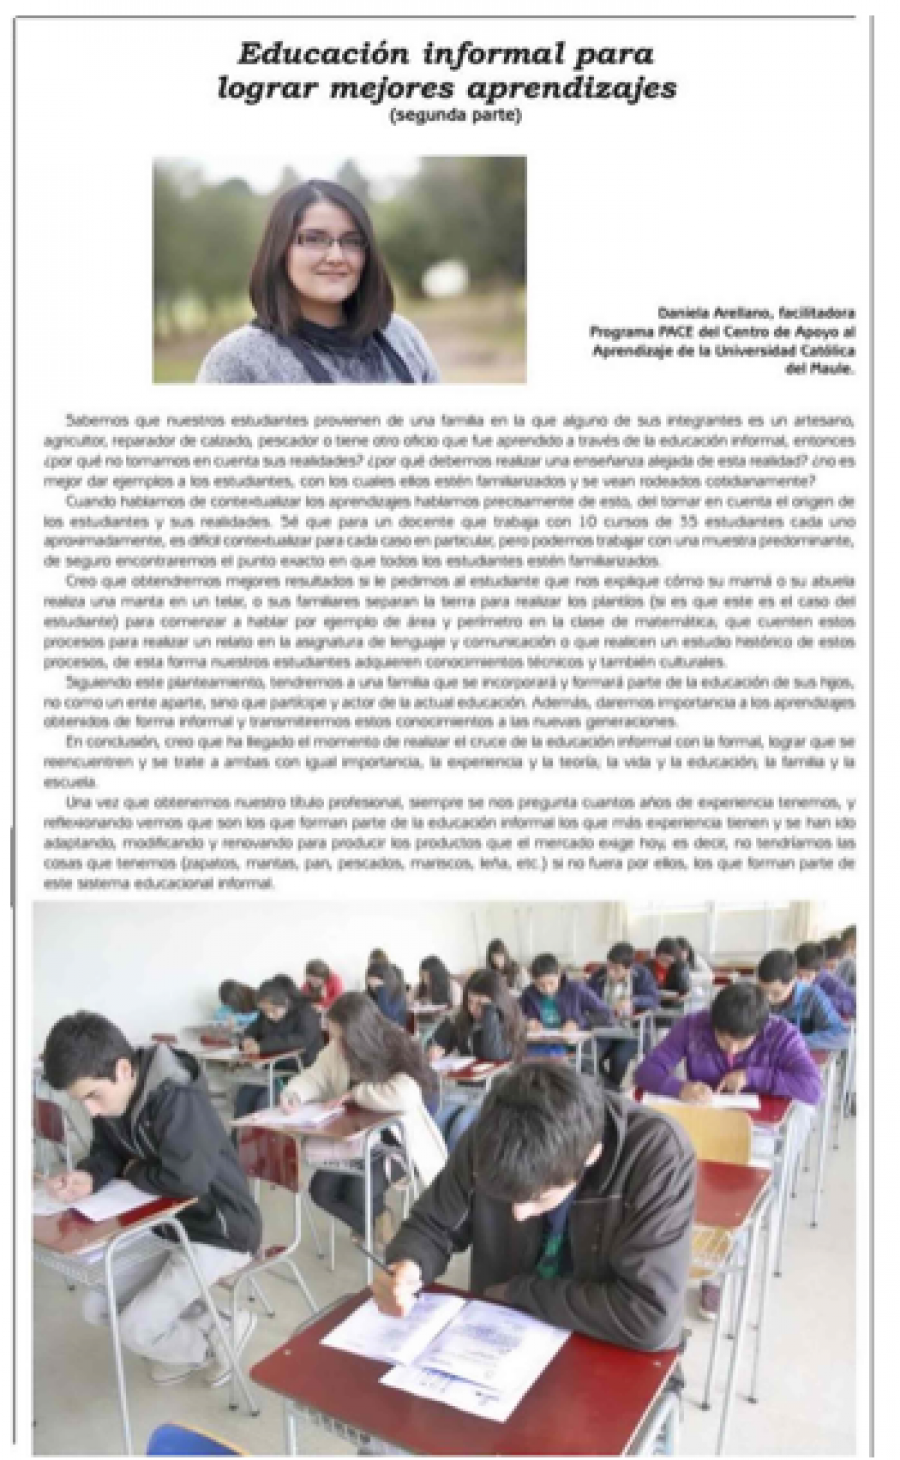 29 de junio en Diario El Lector: “Educación informal para lograr mejores aprendizajes”